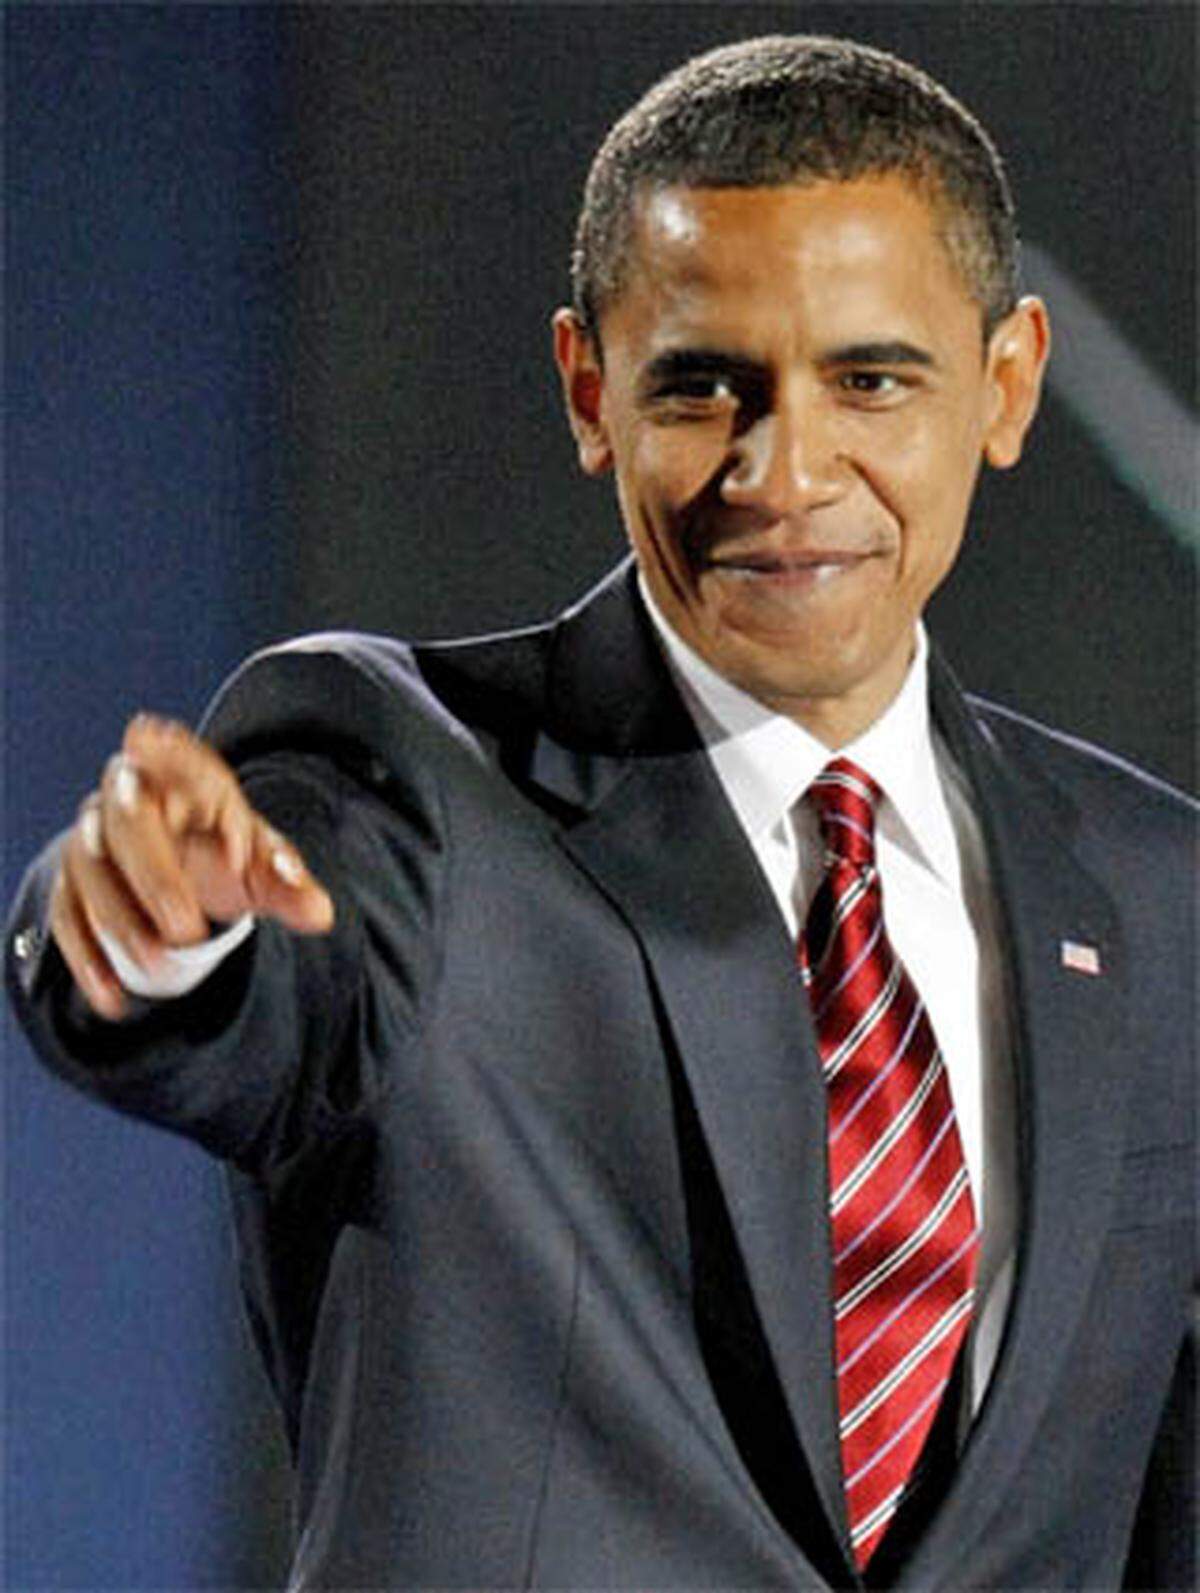 "In Amerika ist alles möglich."  Barack Obama, der erste schwarze US-Präsident.